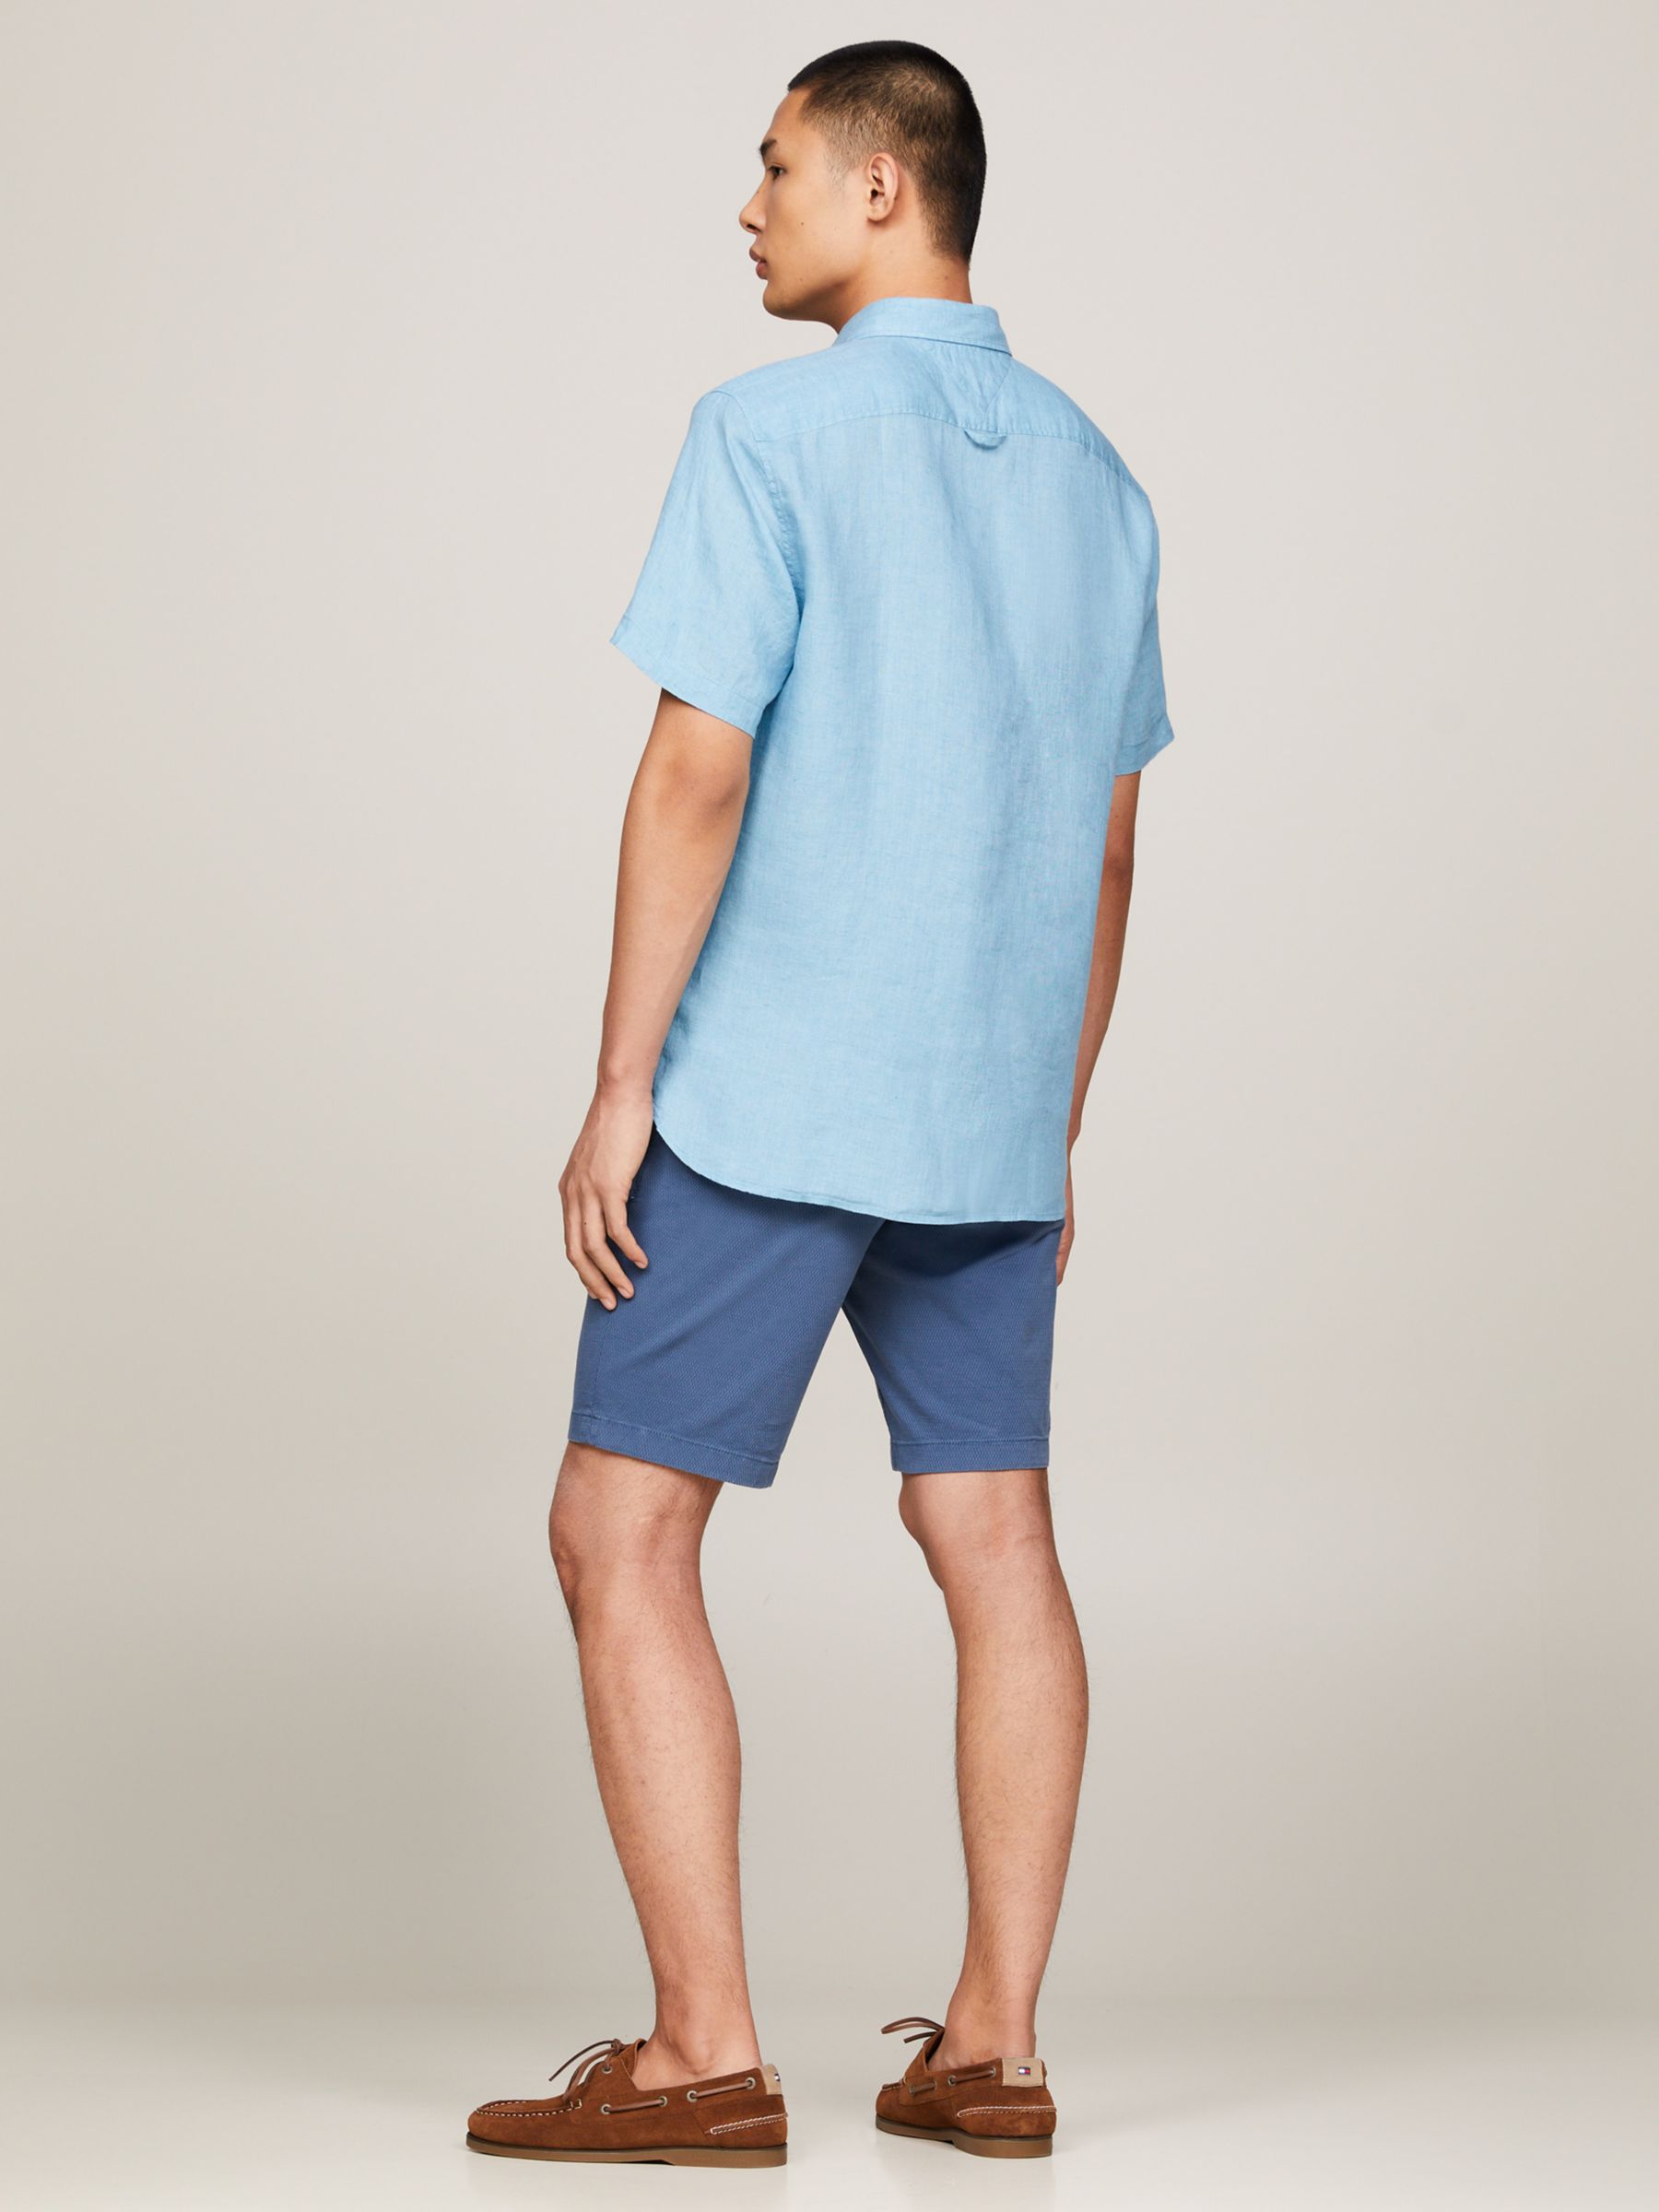 Tommy Hilfiger Pigment Dyed Linen Short Sleeve Shirt, Sleepy Blue, XXXL